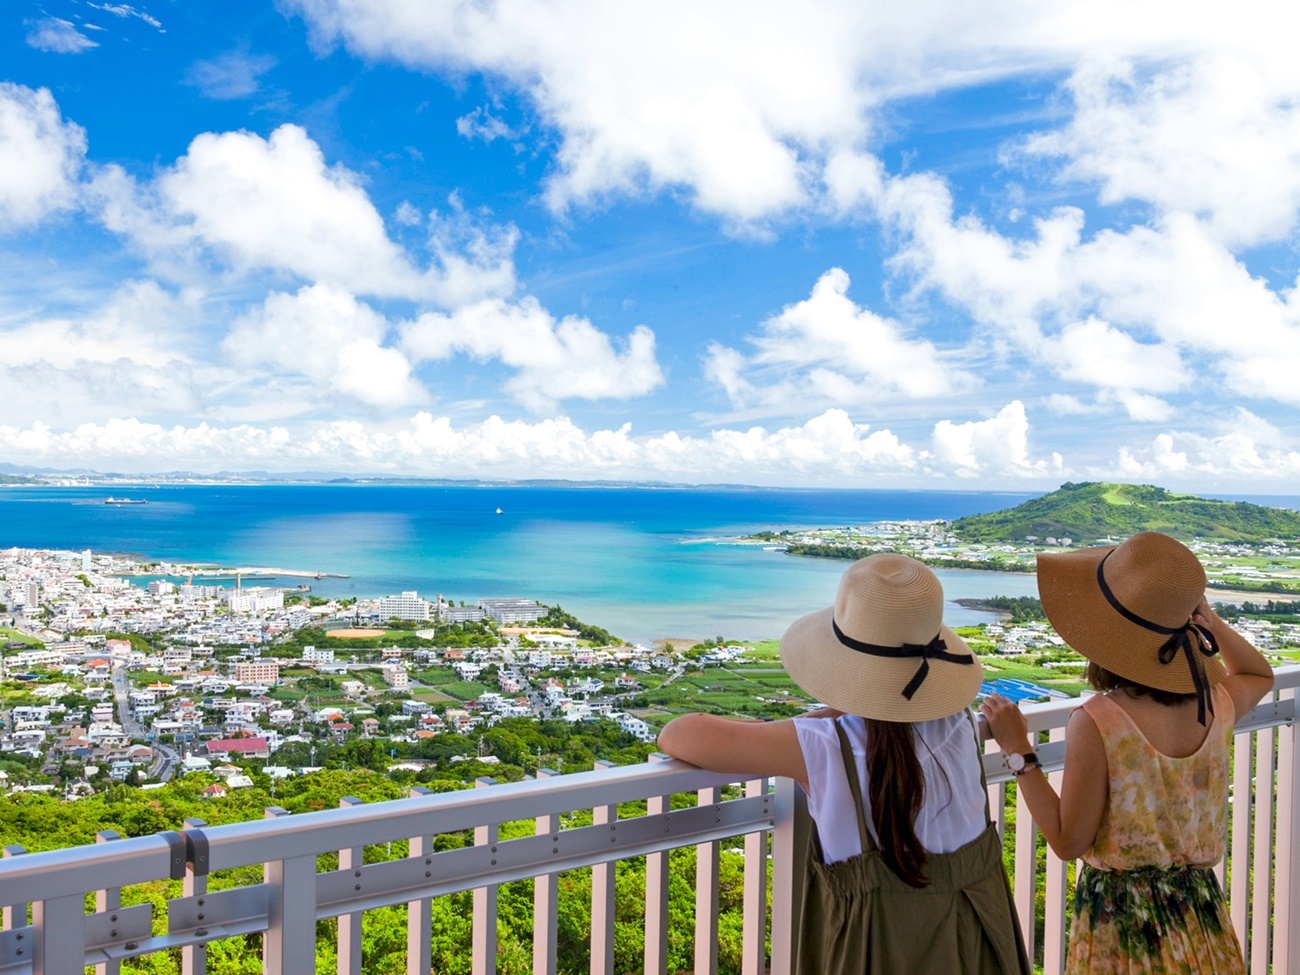 從山頂欣賞令人印象深刻的海景。 “輕鬆的度假住宿，讓您更貼近沖繩”